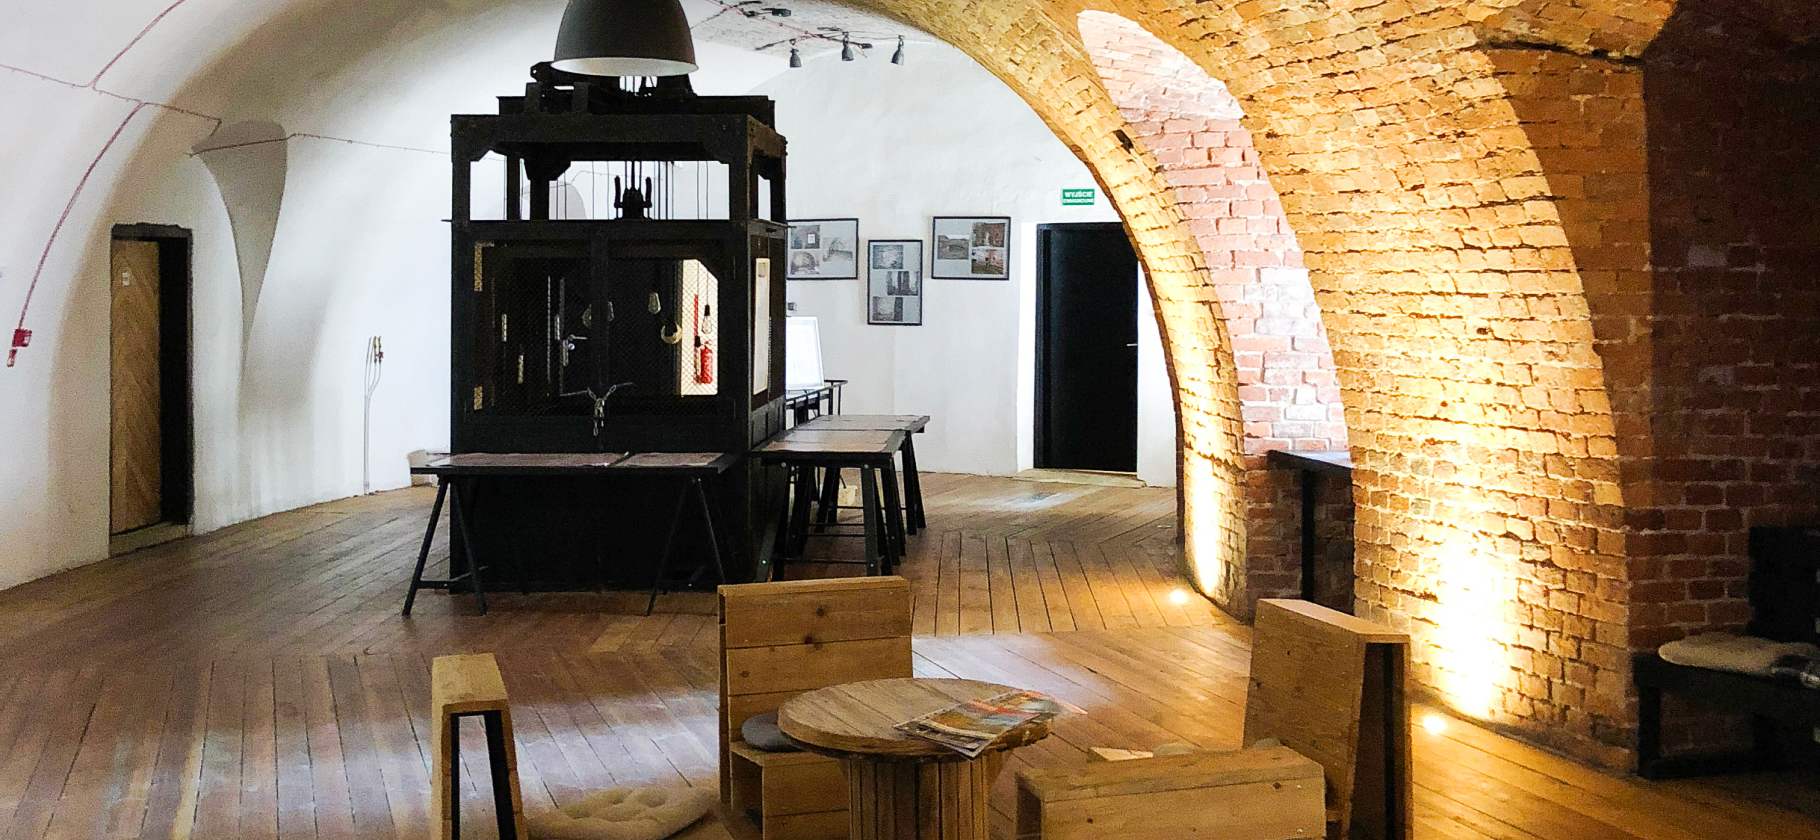 «Приглушенный свет и самодельная мебель»: как мы жили в бывшей тюрьме в Кракове